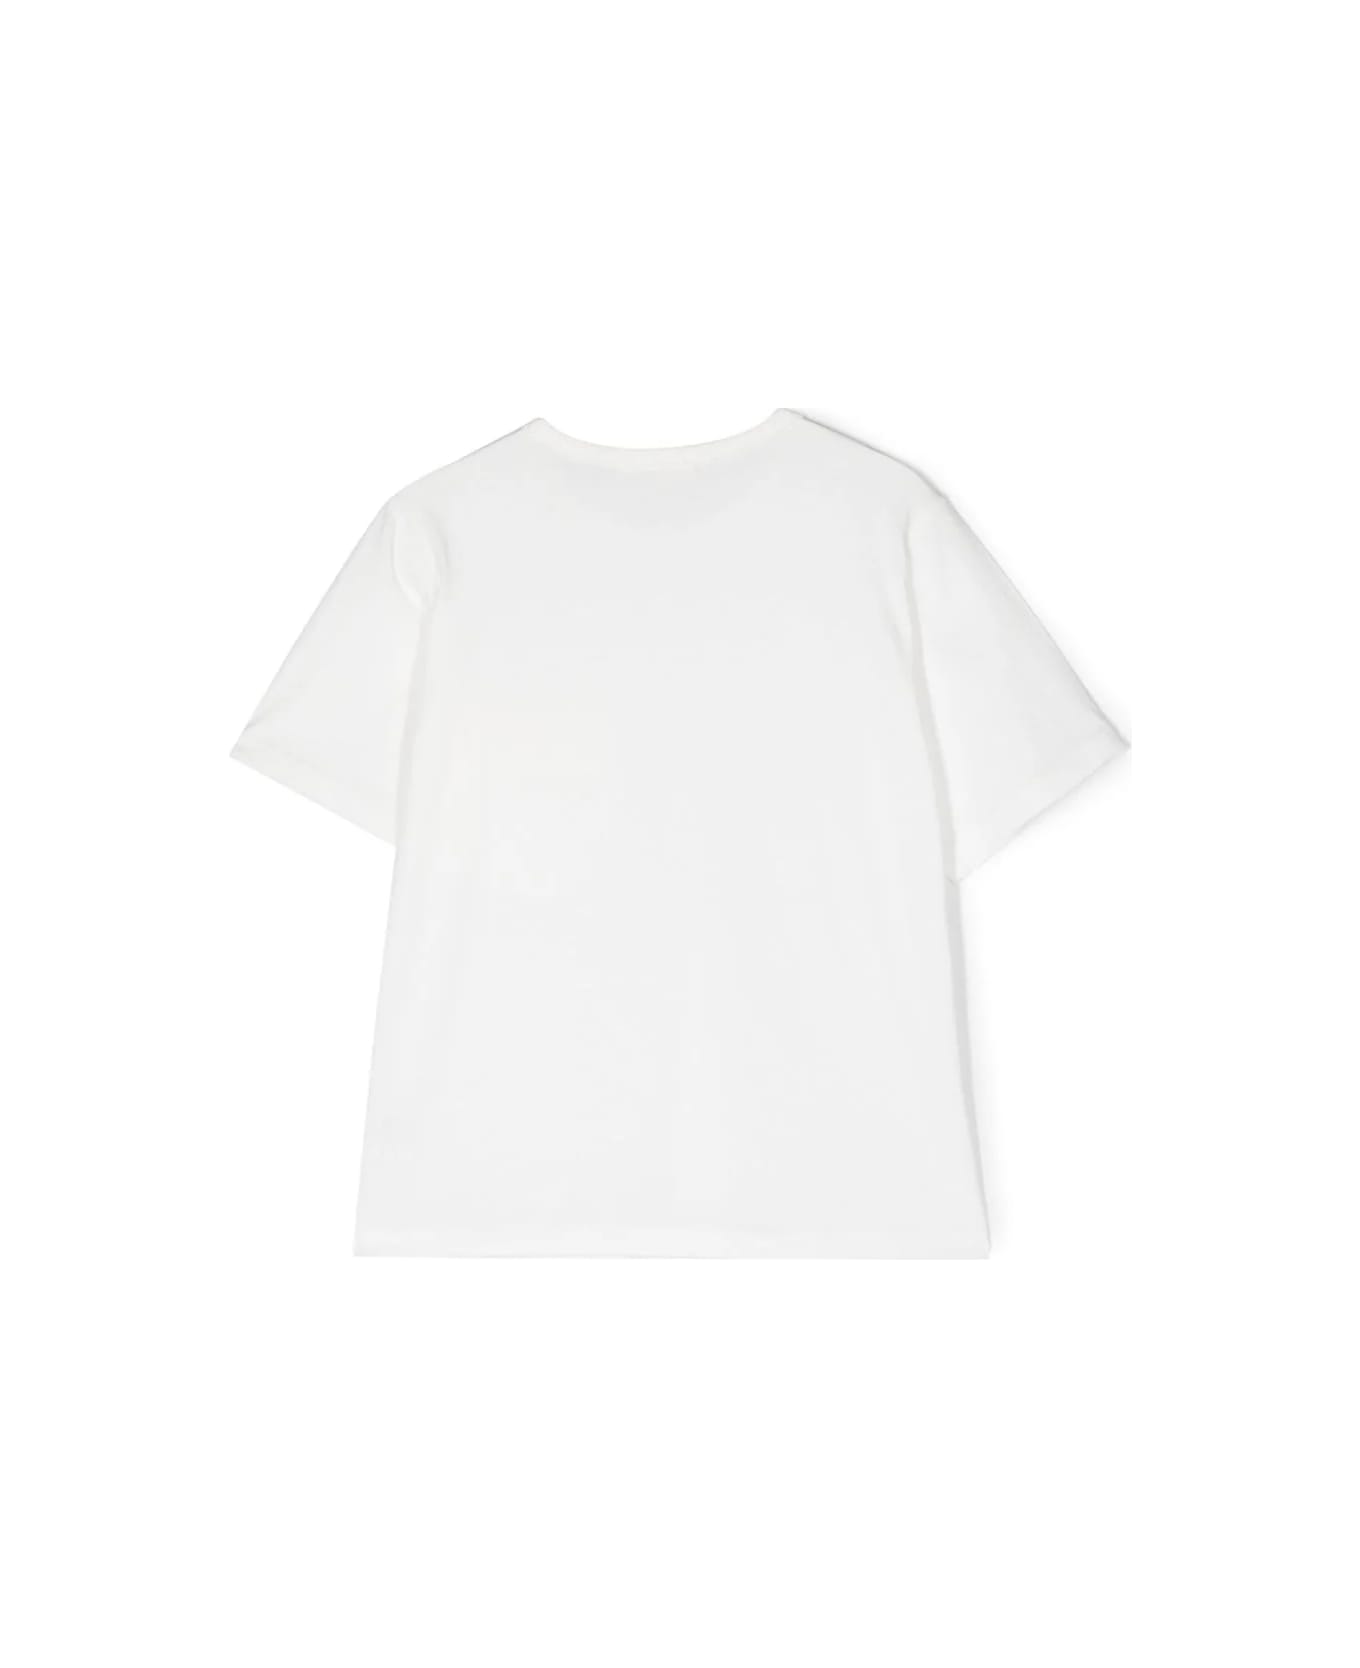 Zhoe & Tobiah T-shirt Bianca - White